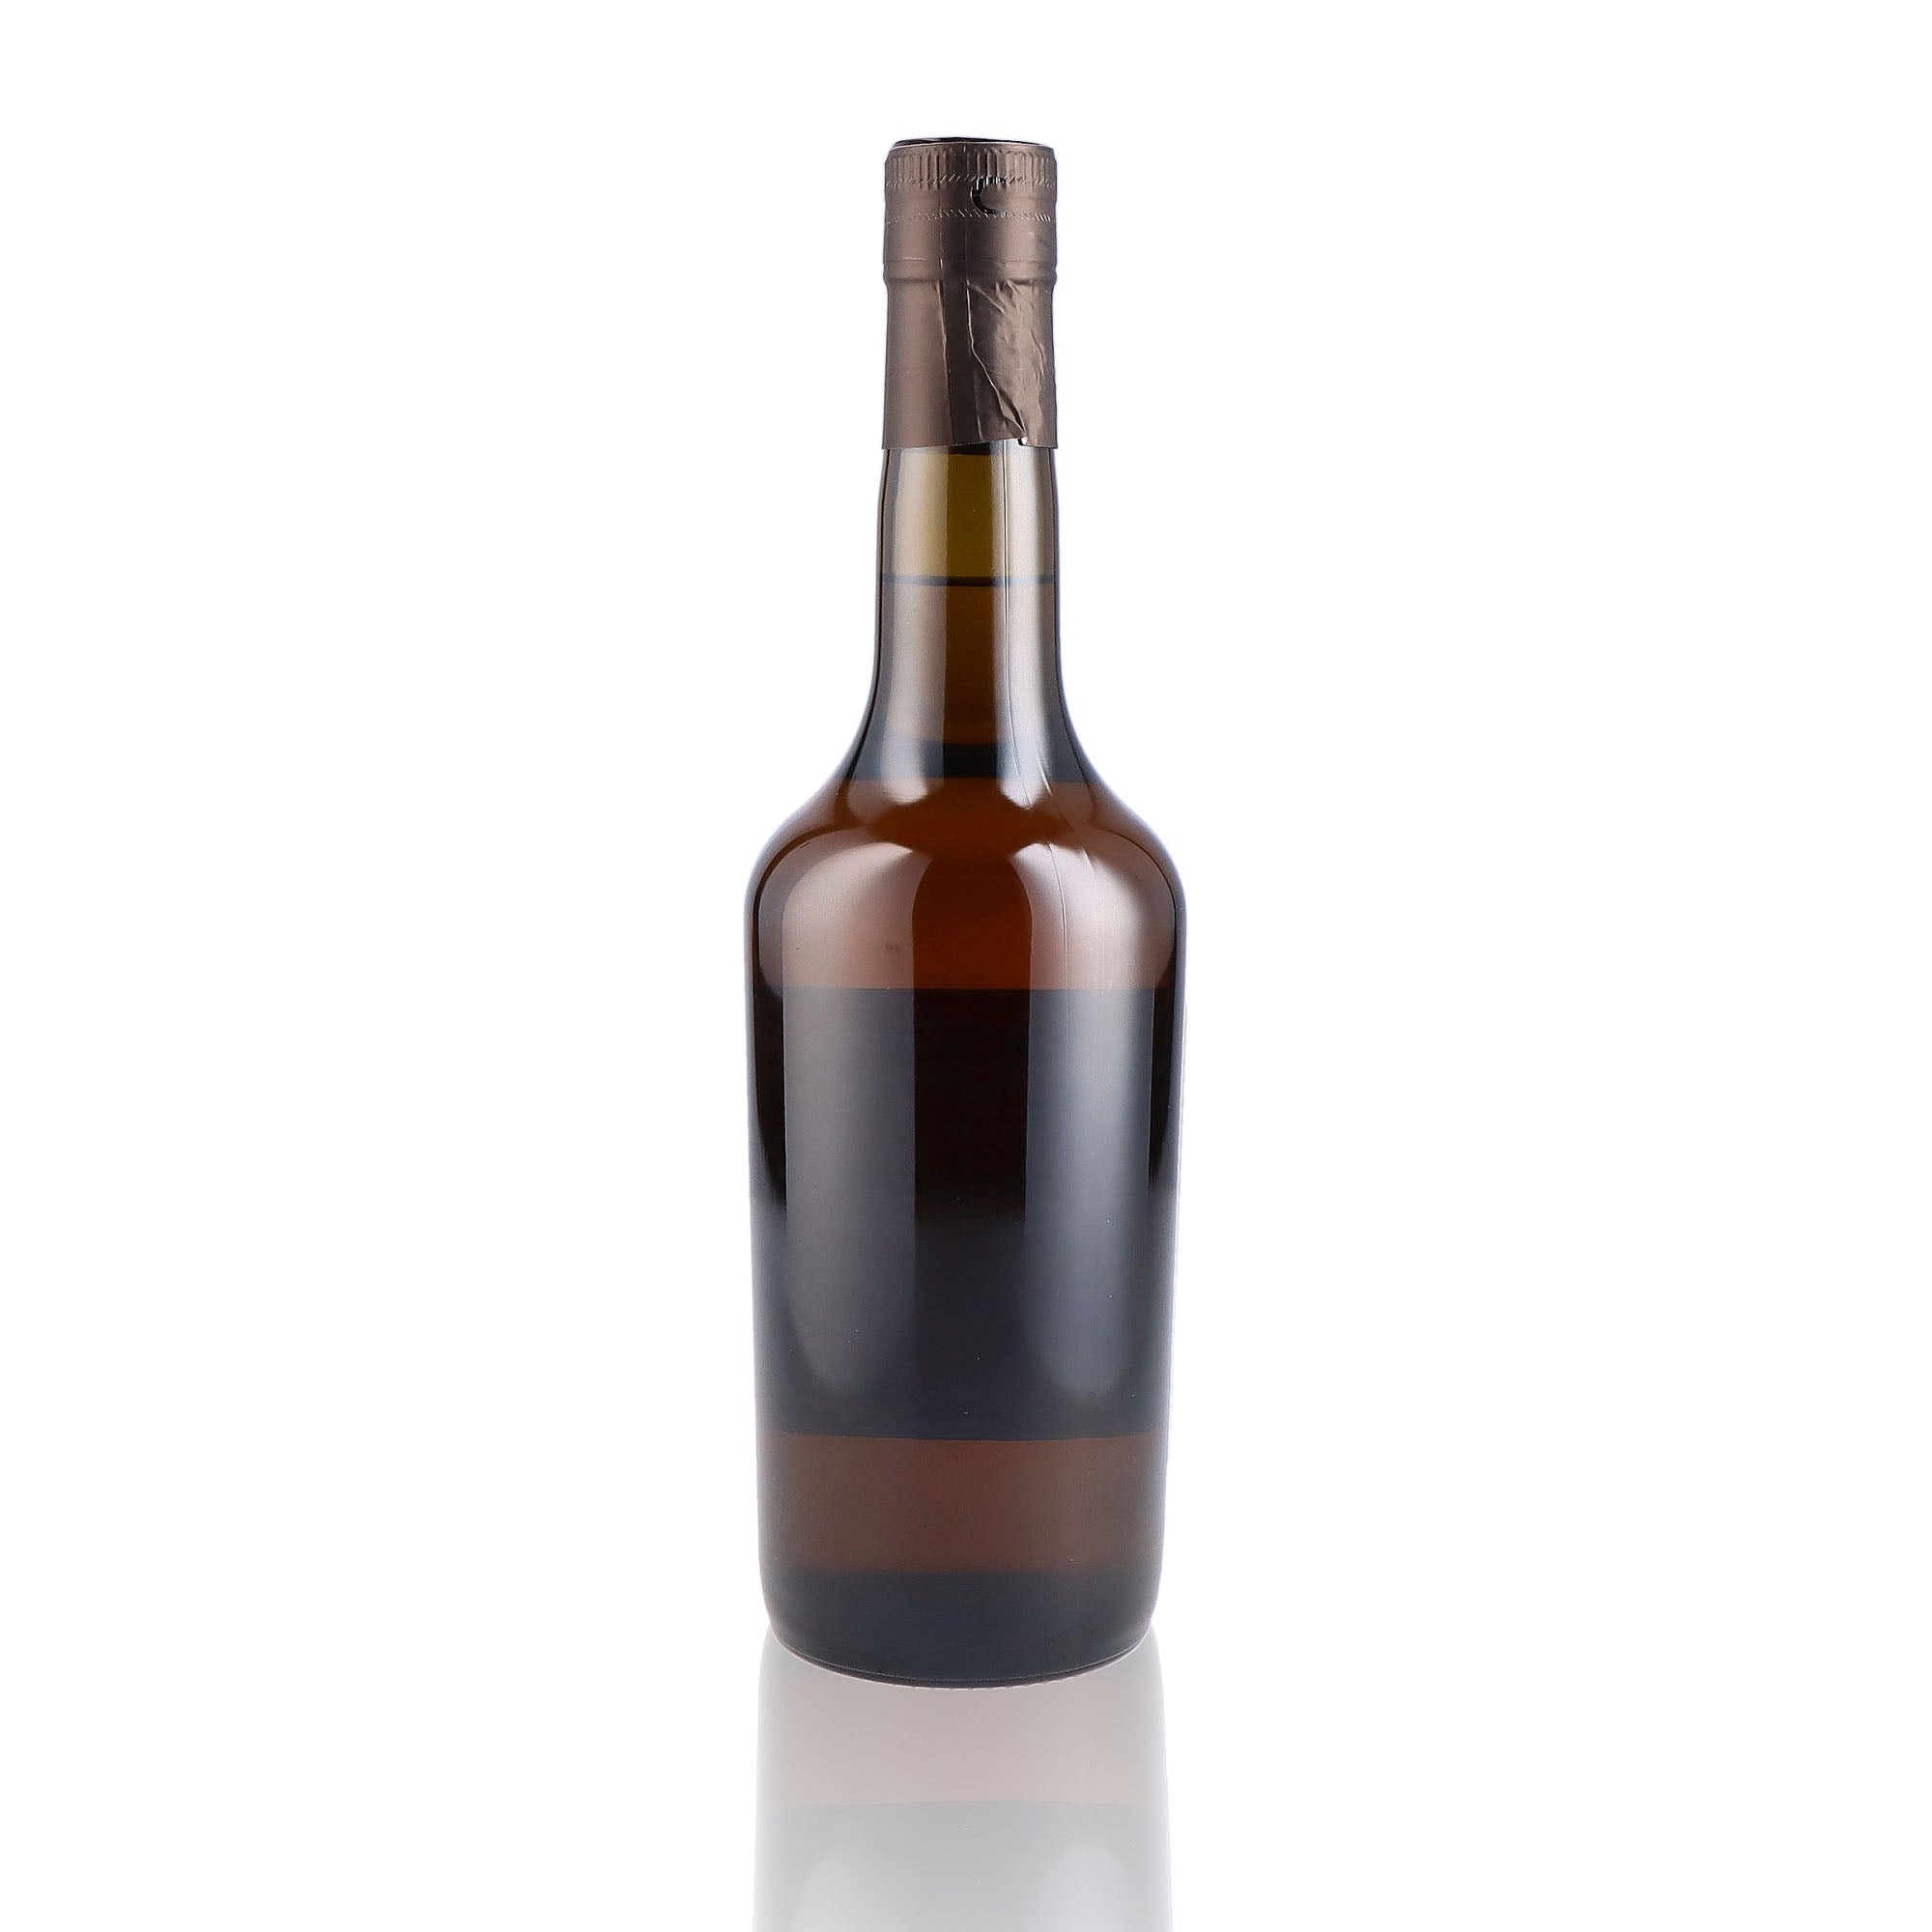 Une bouteille de Calvados, de la marque Roger Groult, nommée Jurançon Cask Finish, 14 ans d'âge.